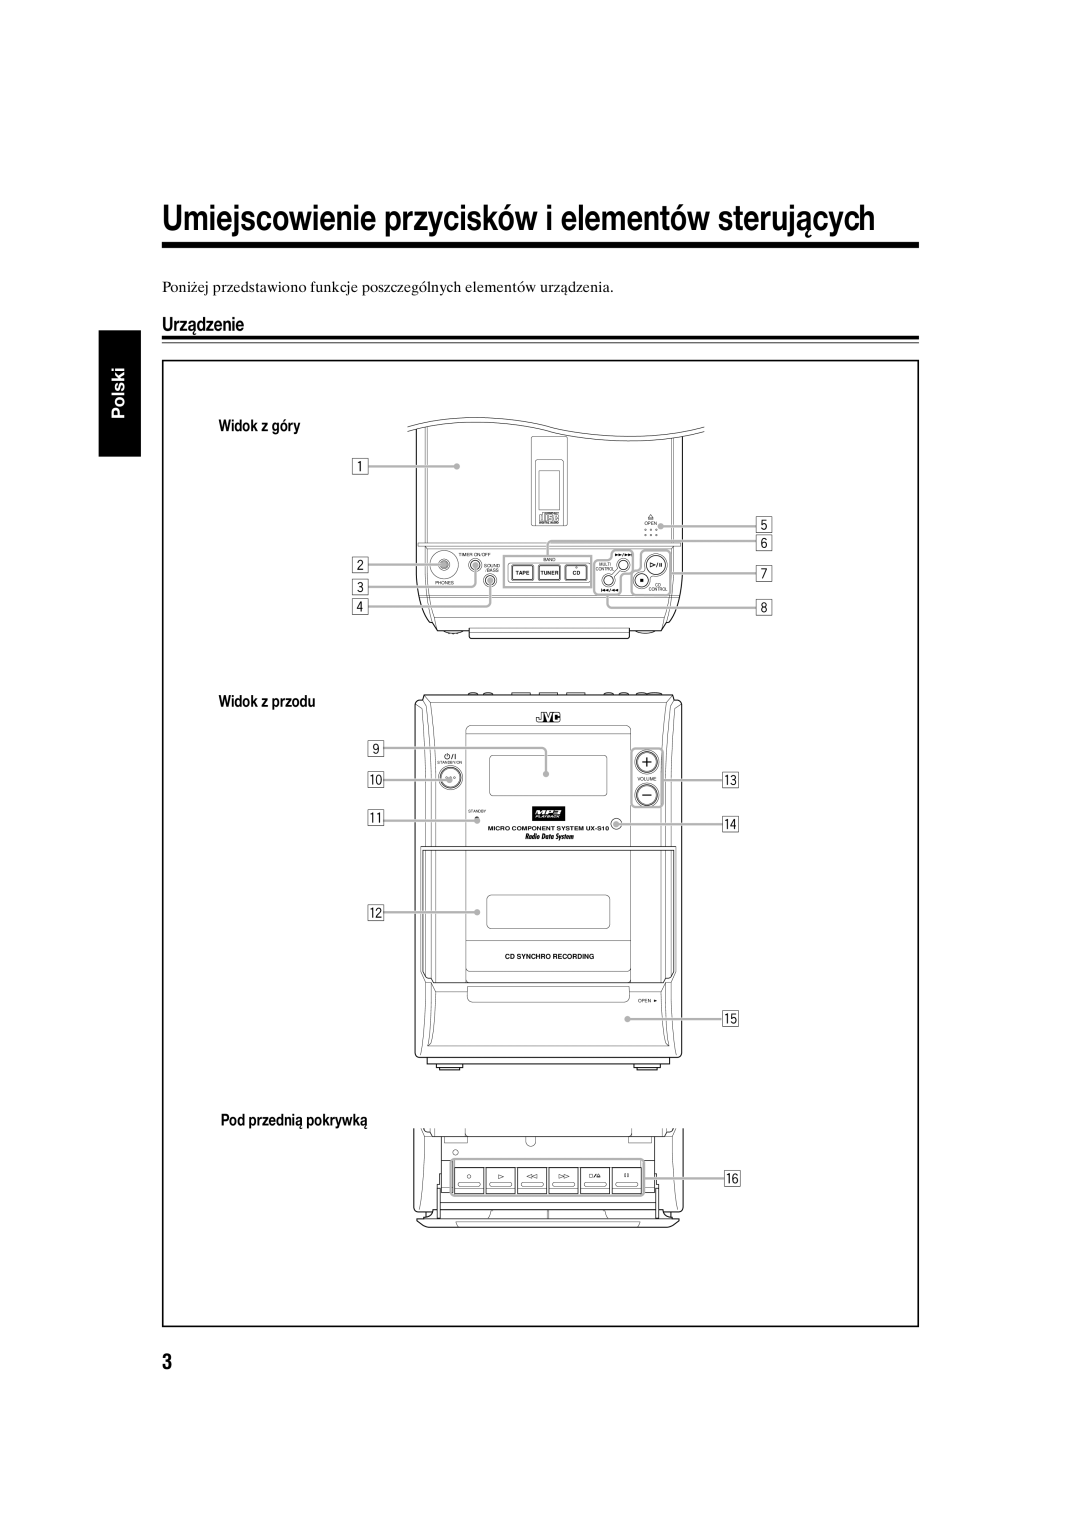 JVC UX-S10 manual Umiejscowienie przycisków i elementów sterujących, Urządzenie, Polski 